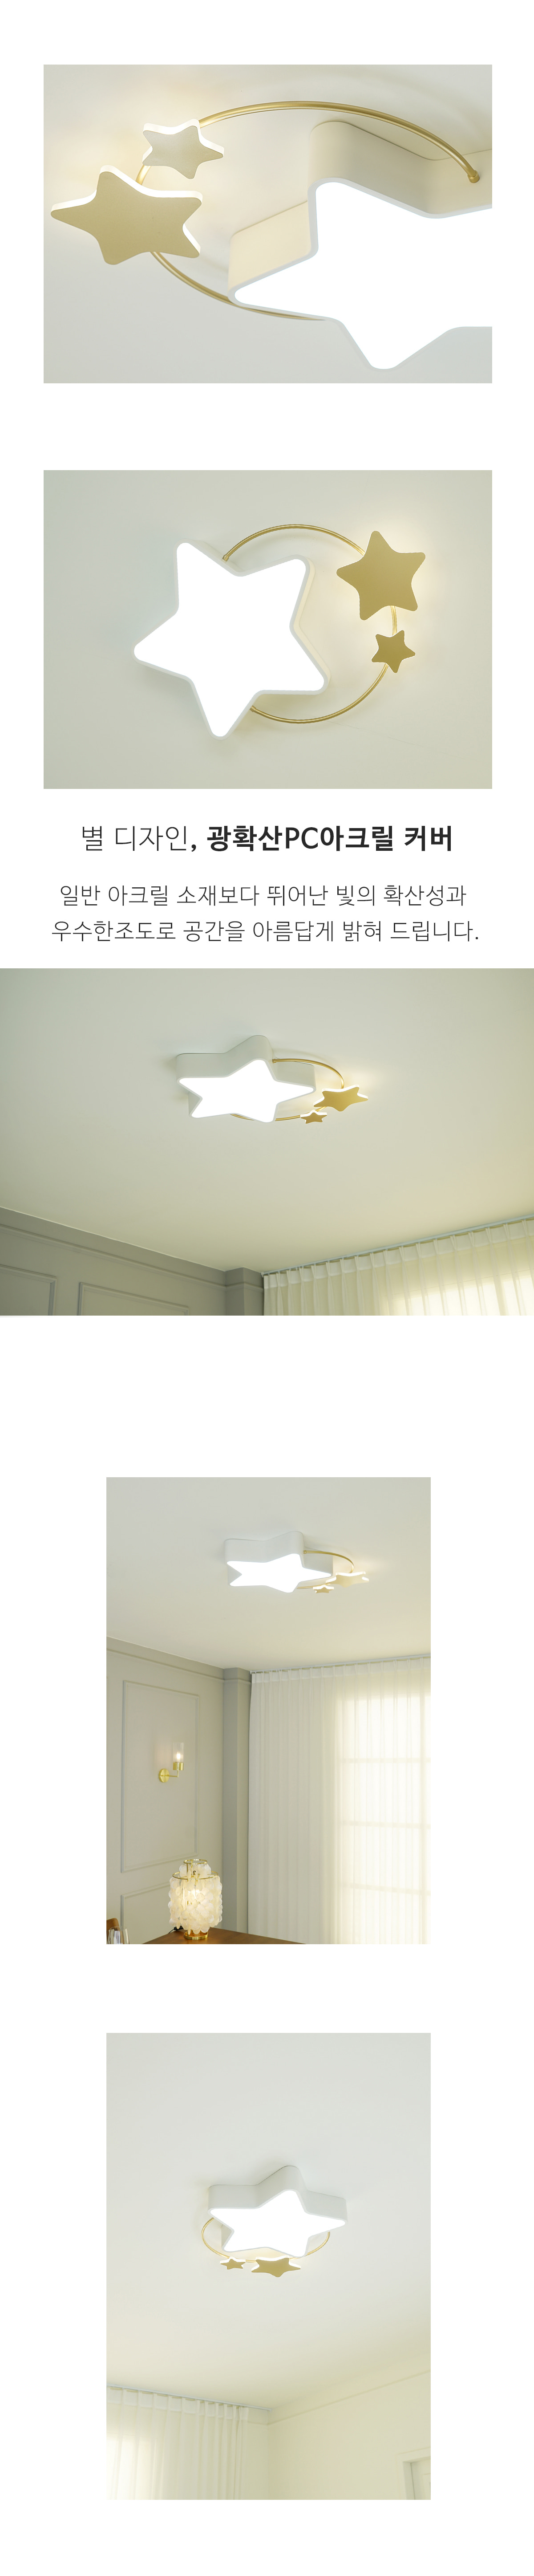 LED 아이방 키즈 별 방등 인테리어 조명